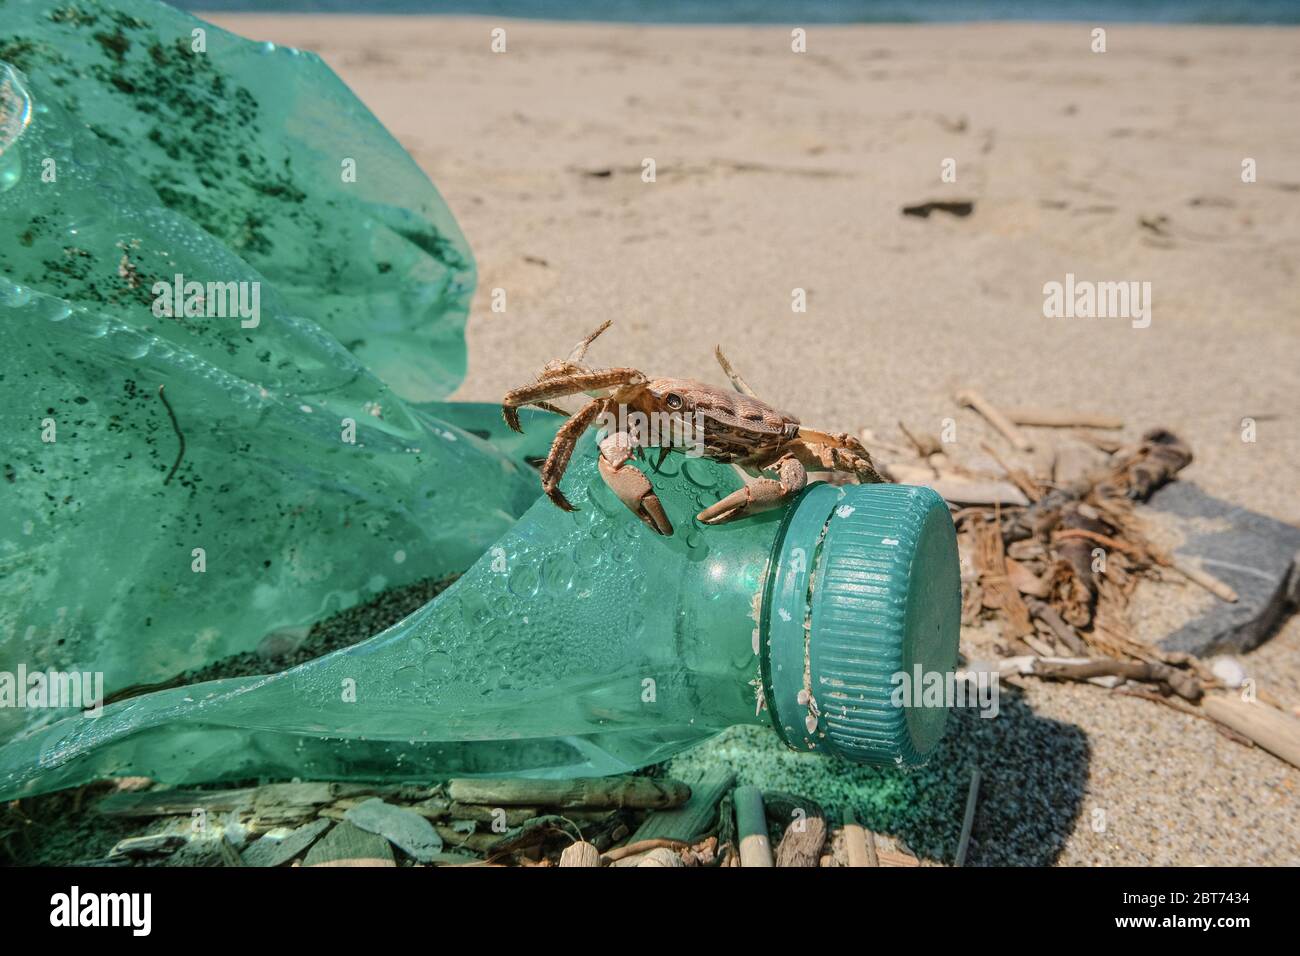 Crabe marin sur une bouteille de plastique déchargée sur un habitat pollué de la côte de mer sablonneuse Banque D'Images